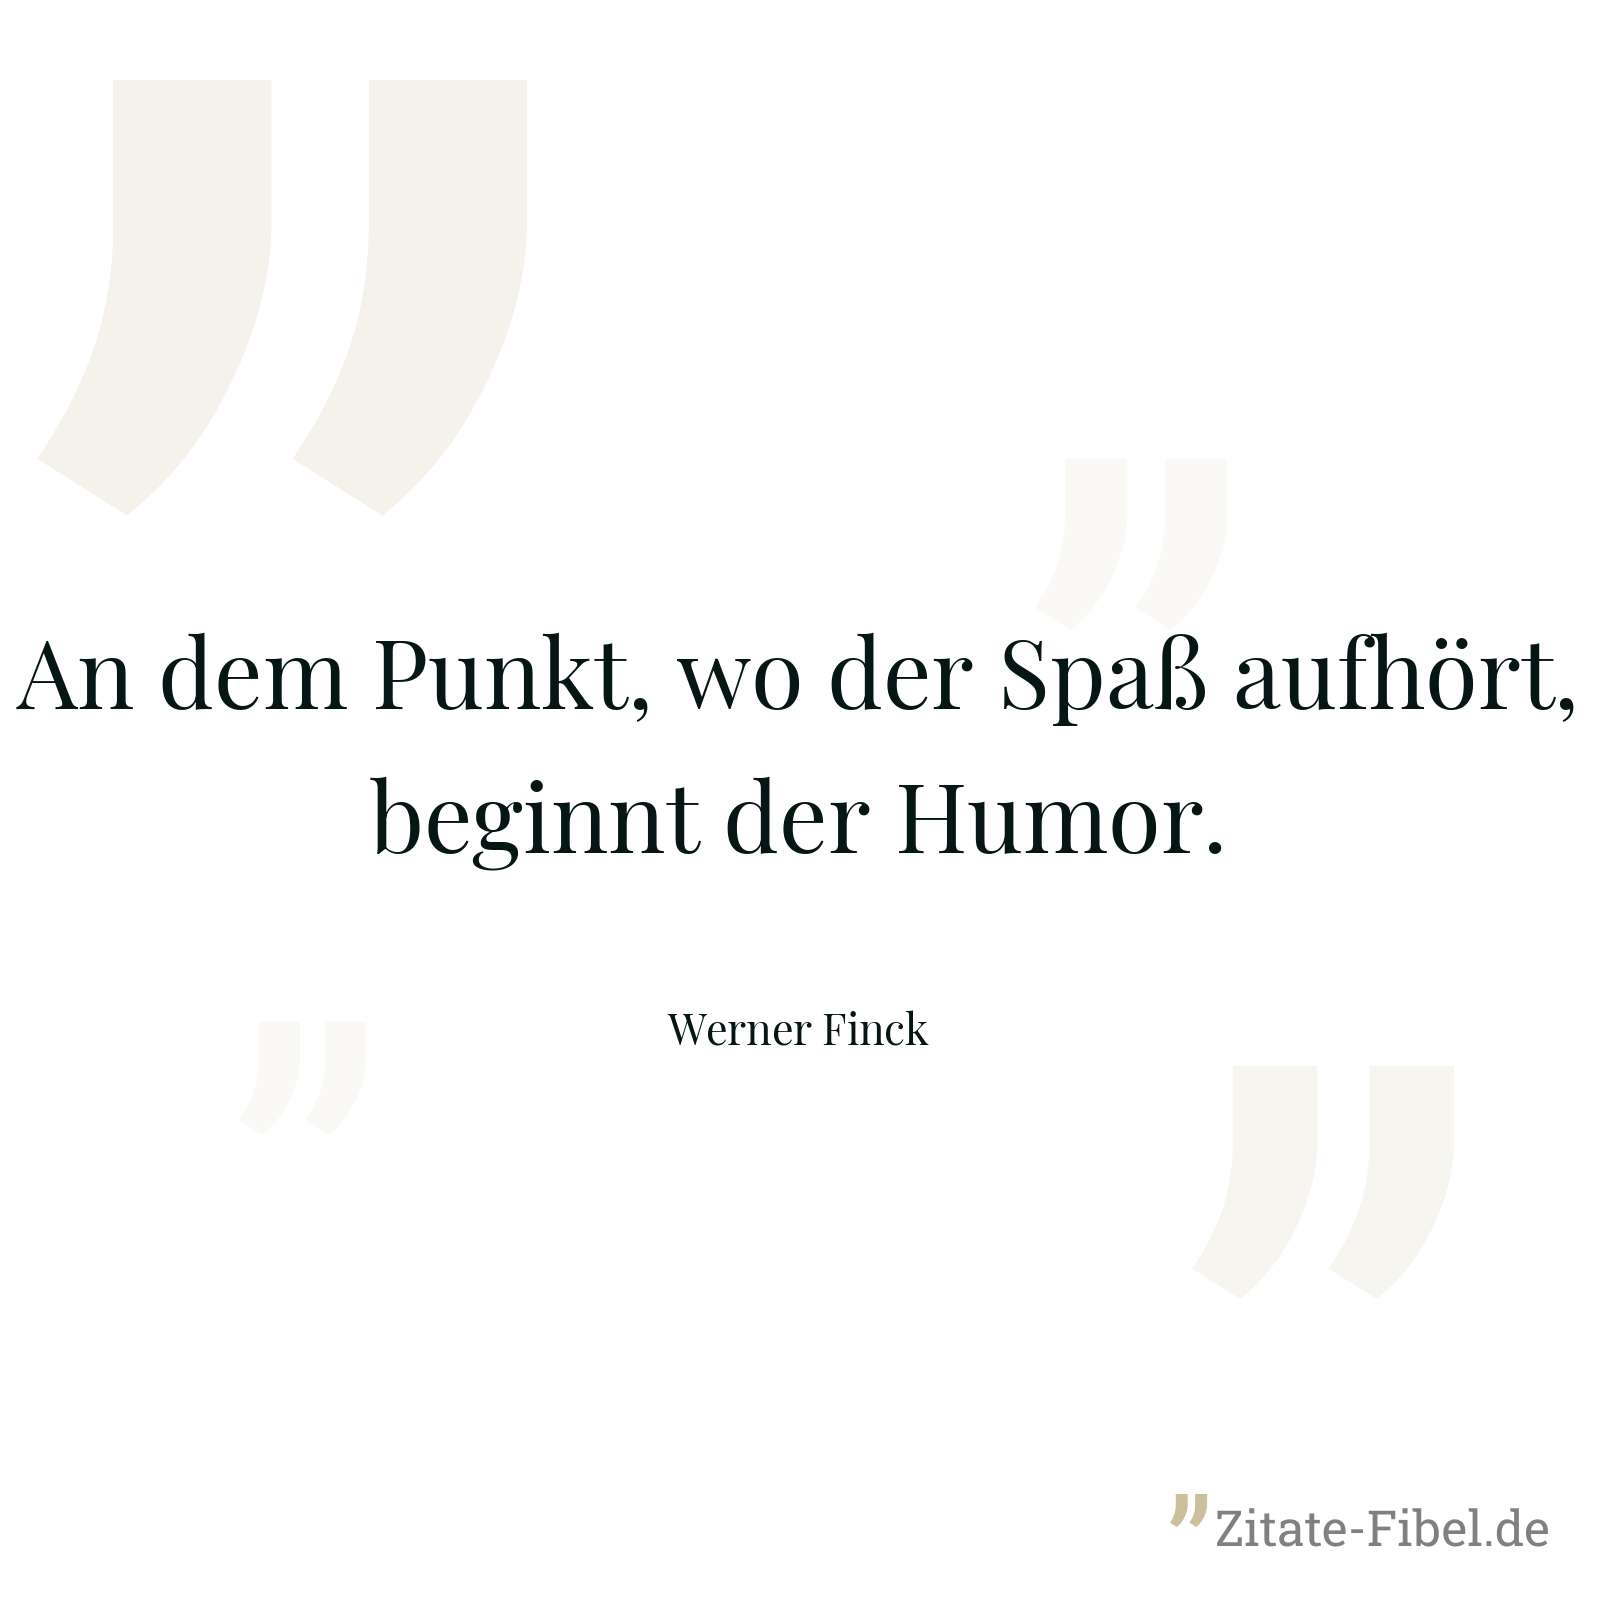 An dem Punkt, wo der Spaß aufhört, beginnt der Humor. - Werner Finck